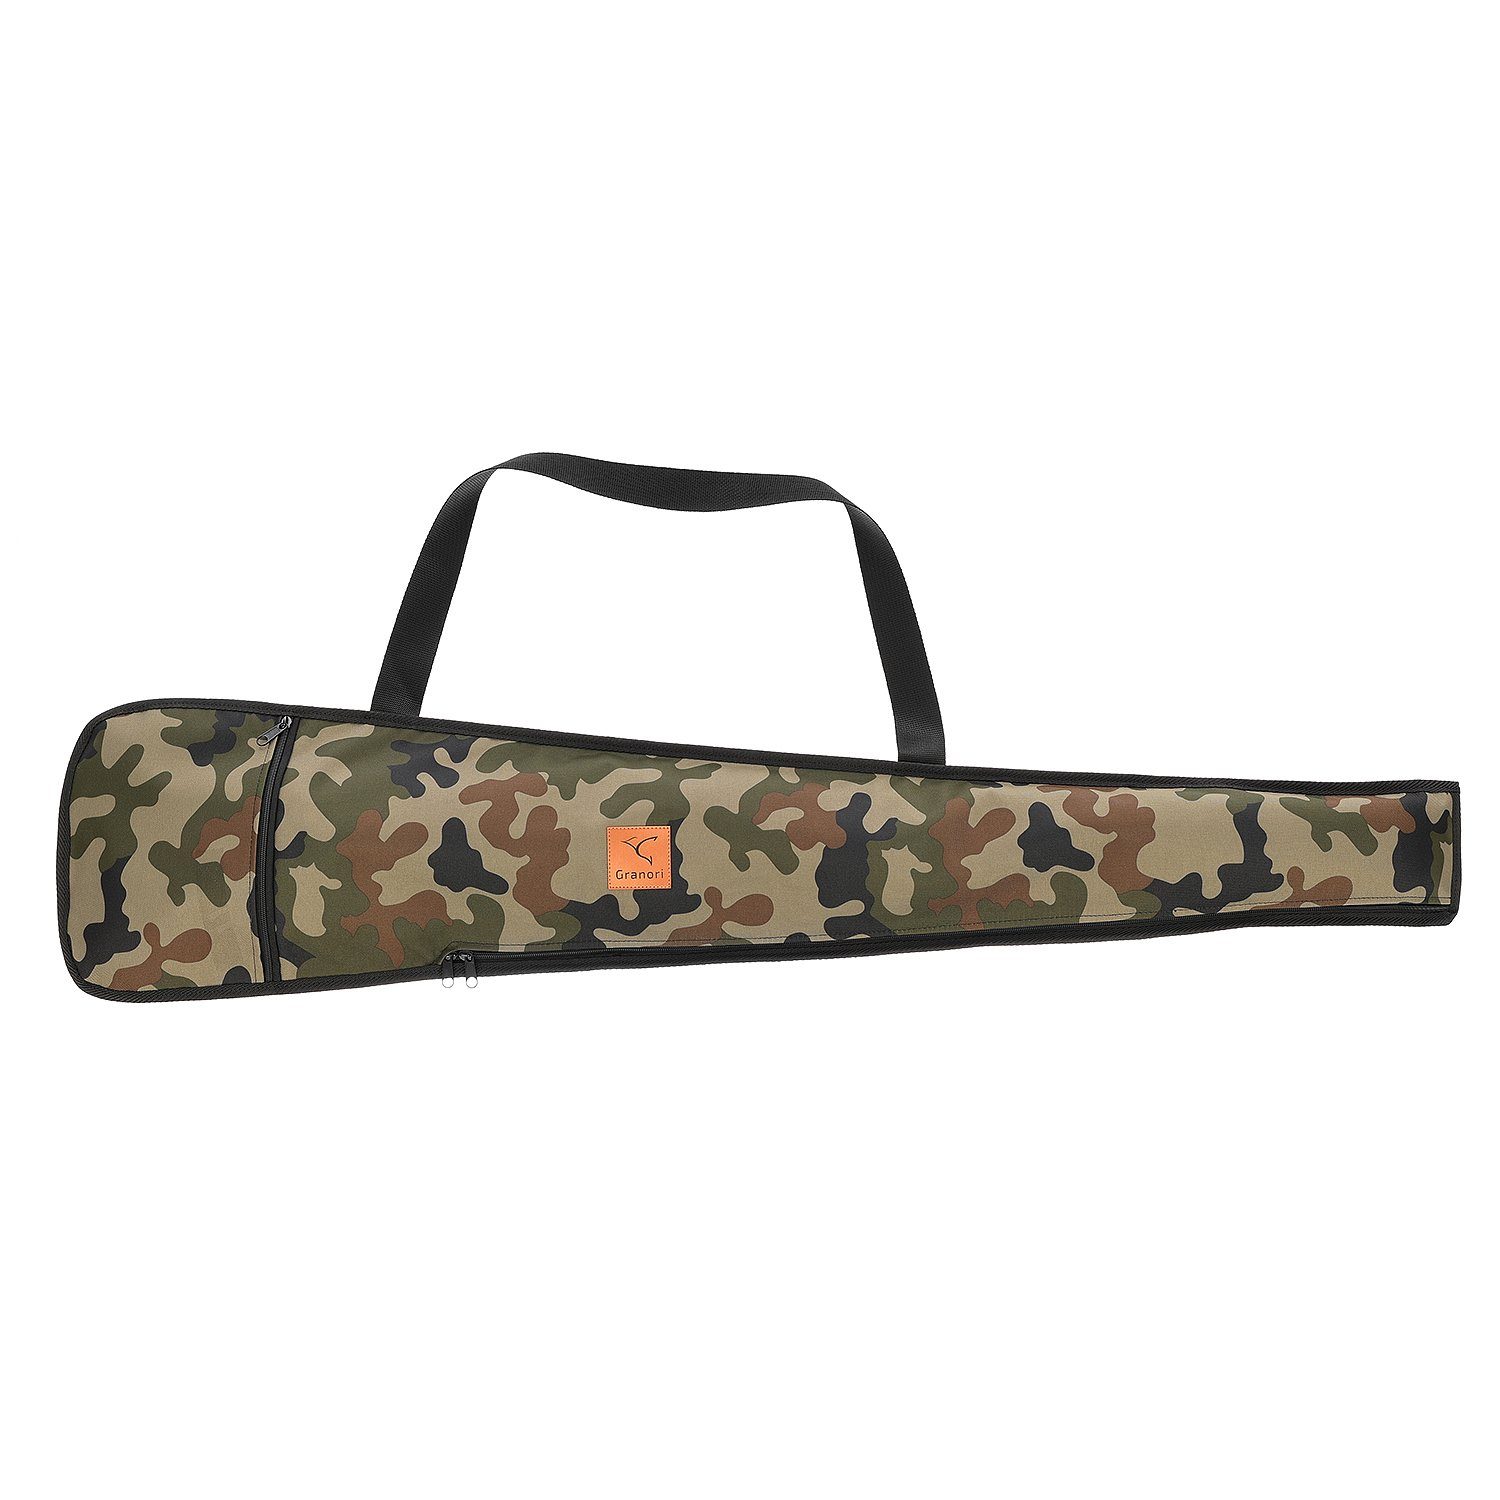 Granori Sporttasche für Luftgewehr – Waffentasche / Gewehrfutteral 114 cm mit Trageriemen, abschließbar, wasserabweisend und mit Außentasche Camouflage